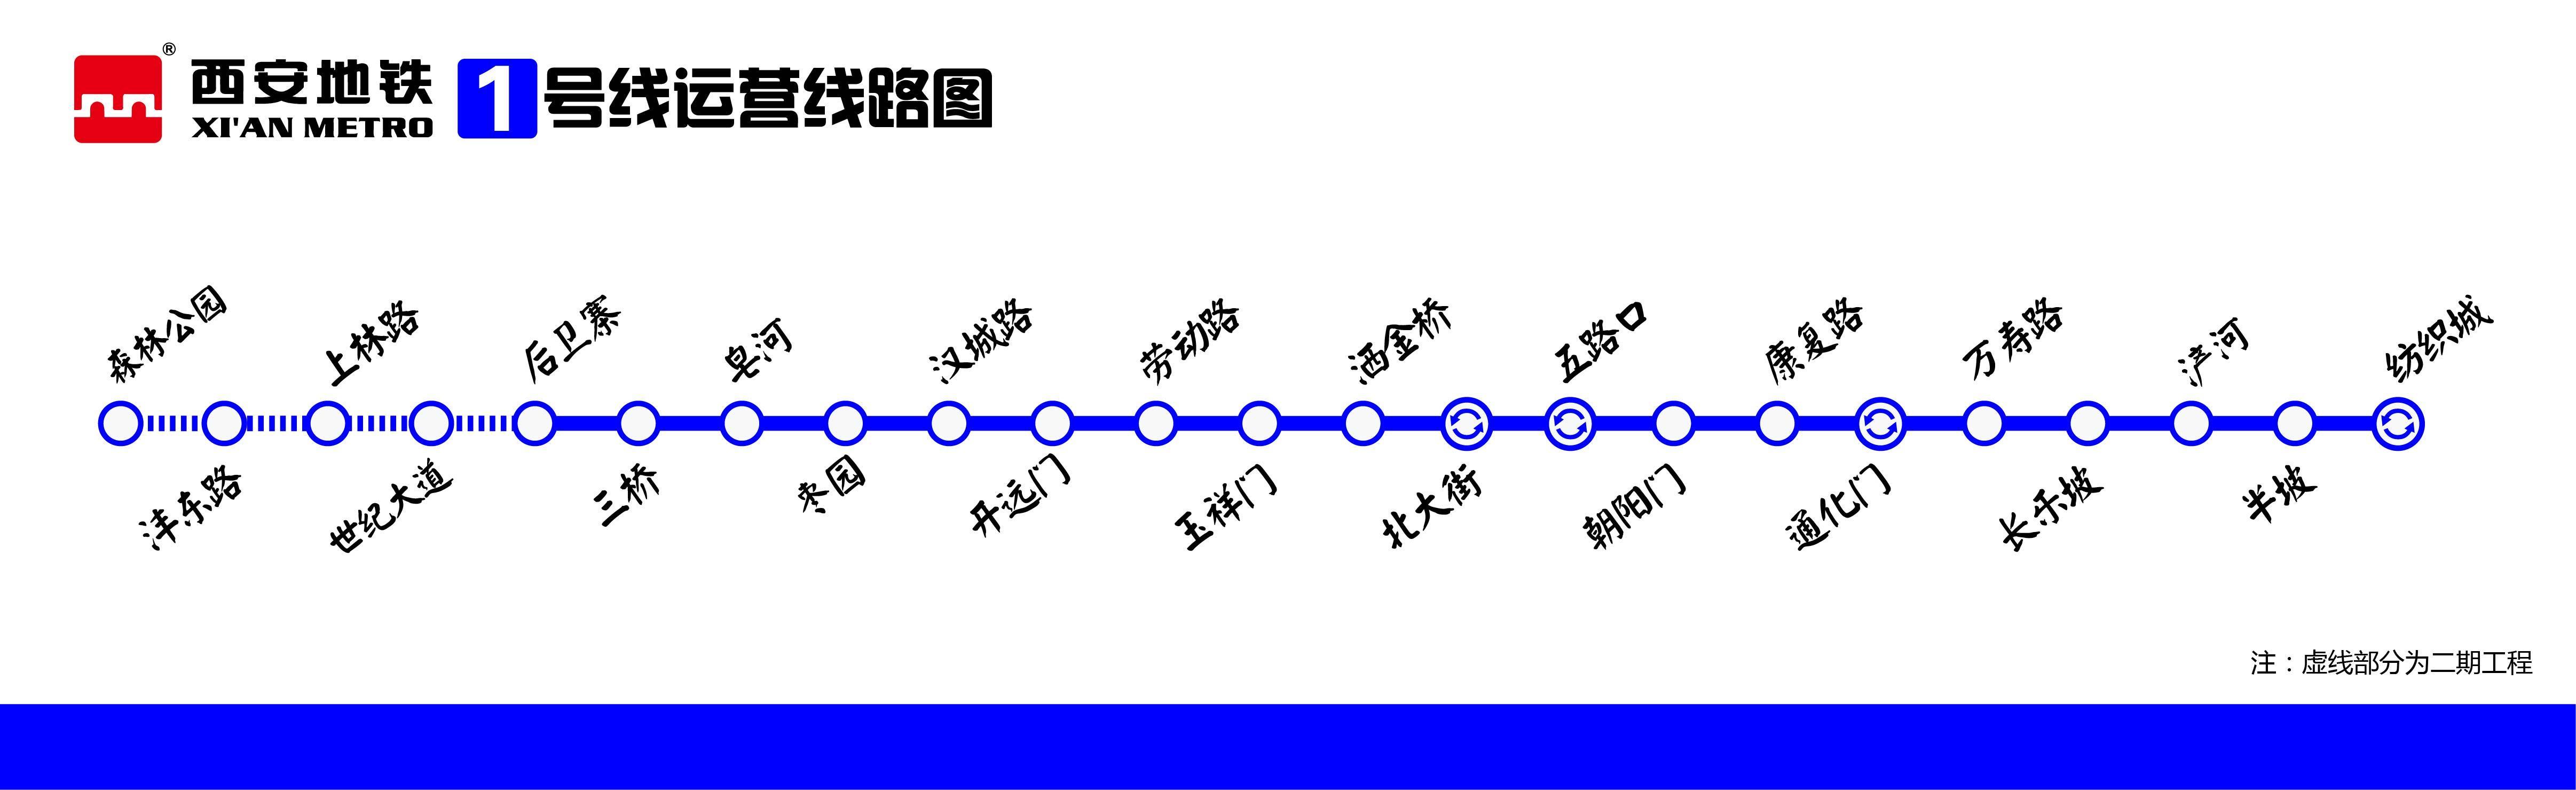 贵阳地铁1号线线路图_运营时间票价站点_查询下载|地铁图